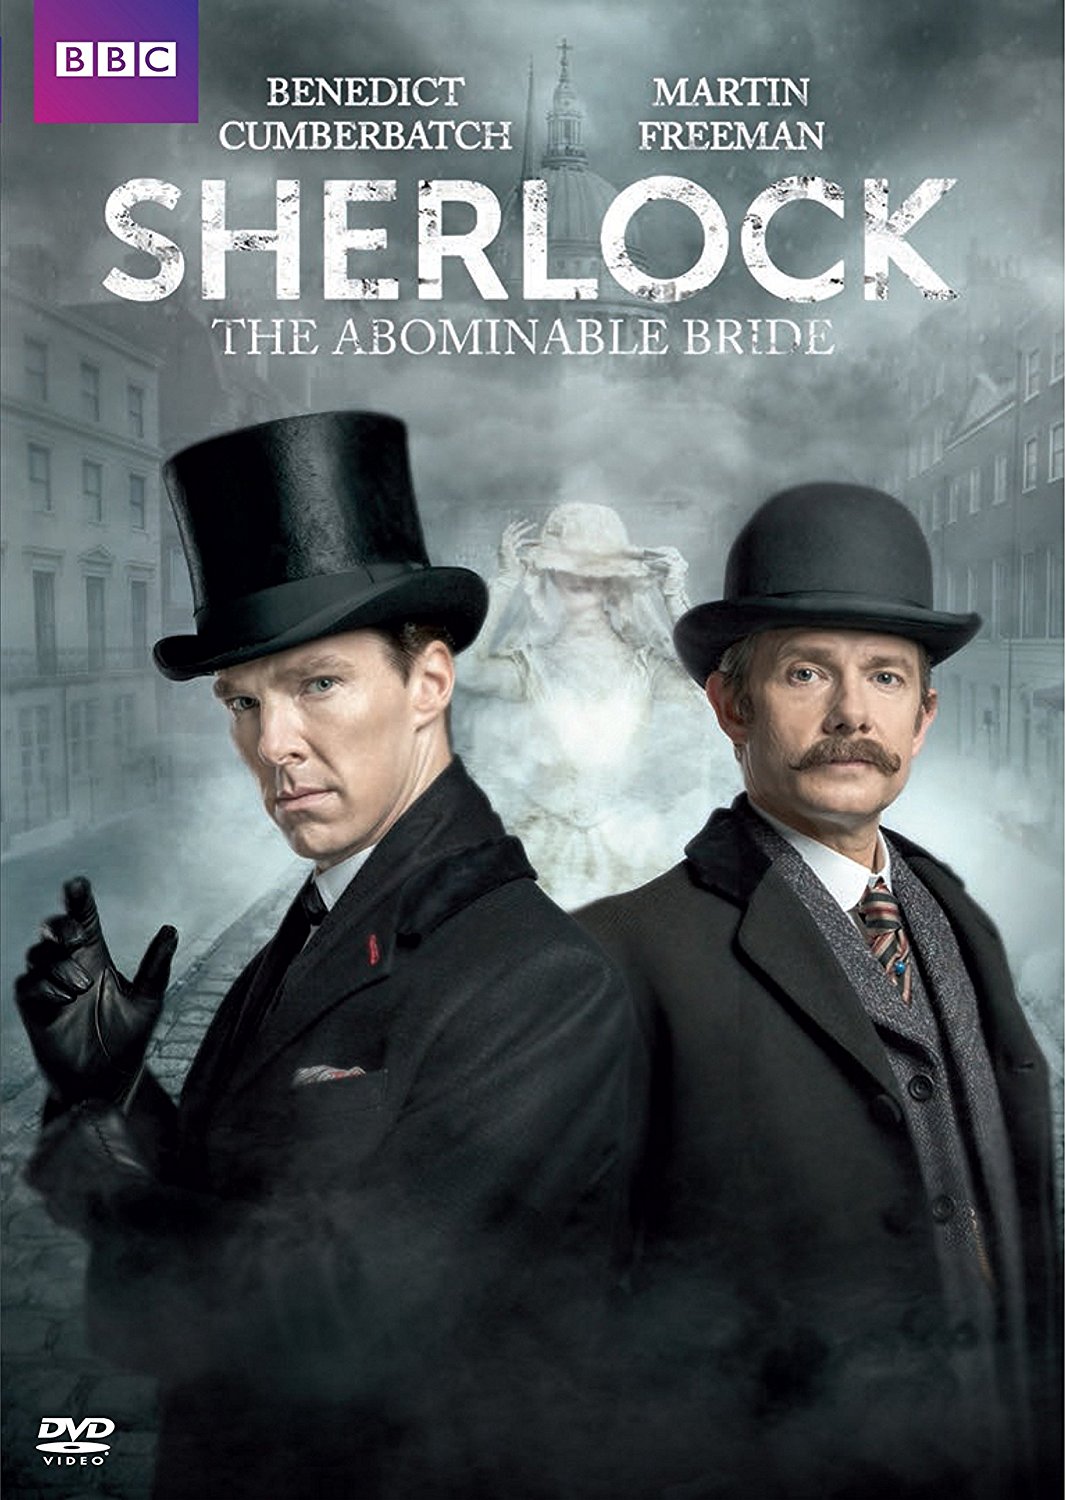 映画版 Sherlock で学ぶ シビれるほどかっこいい英語表現 Mag2 News Goo ニュース